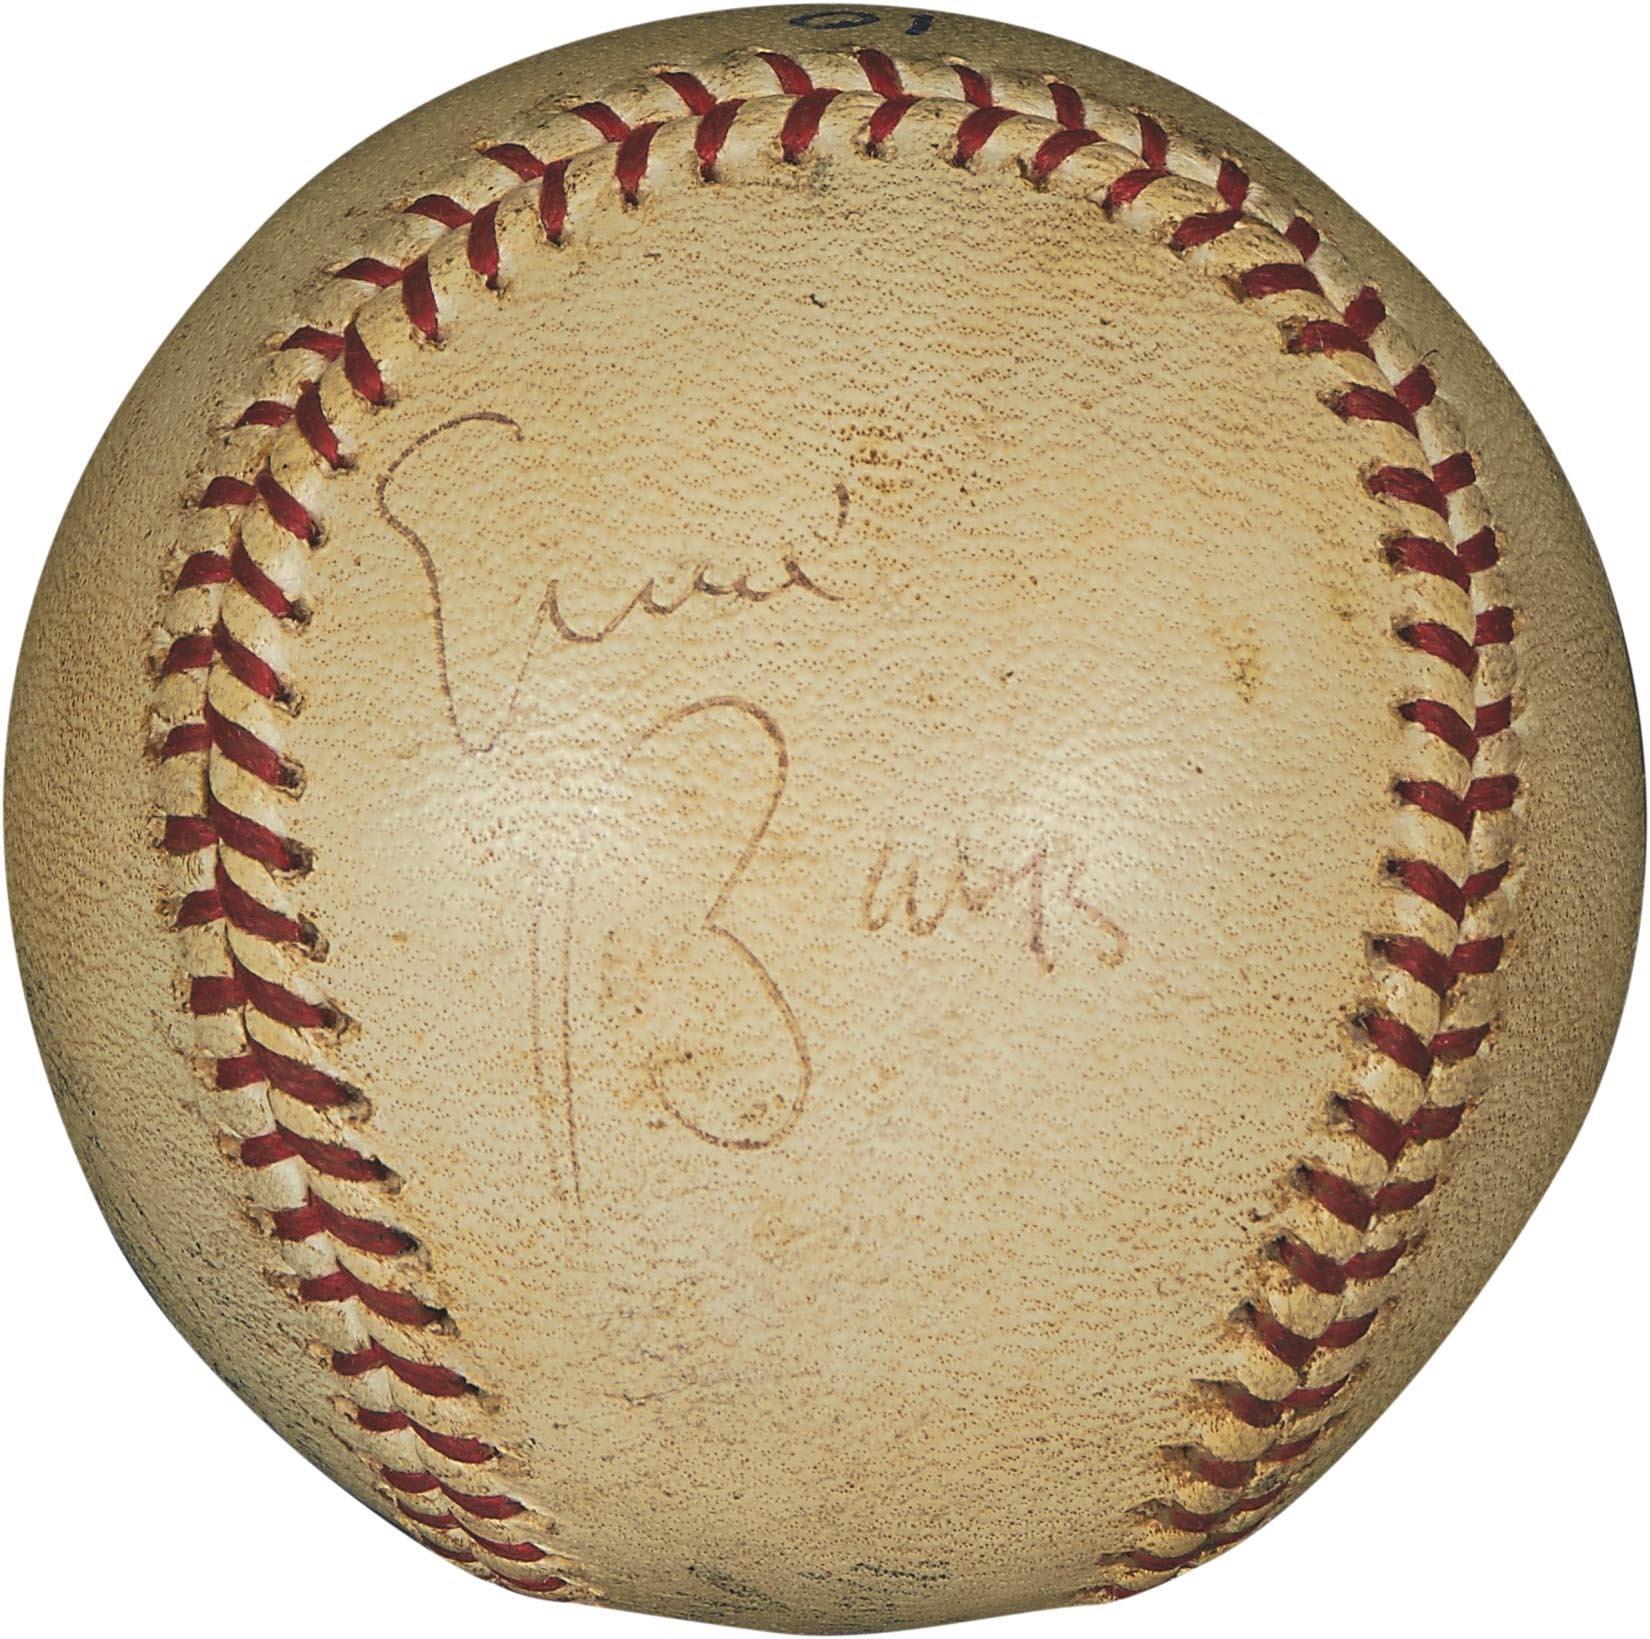 Baseball Equipment - 1963 Ernie Banks 344th Career Home Run Baseball (PSA & Rich Buhrke Letter)